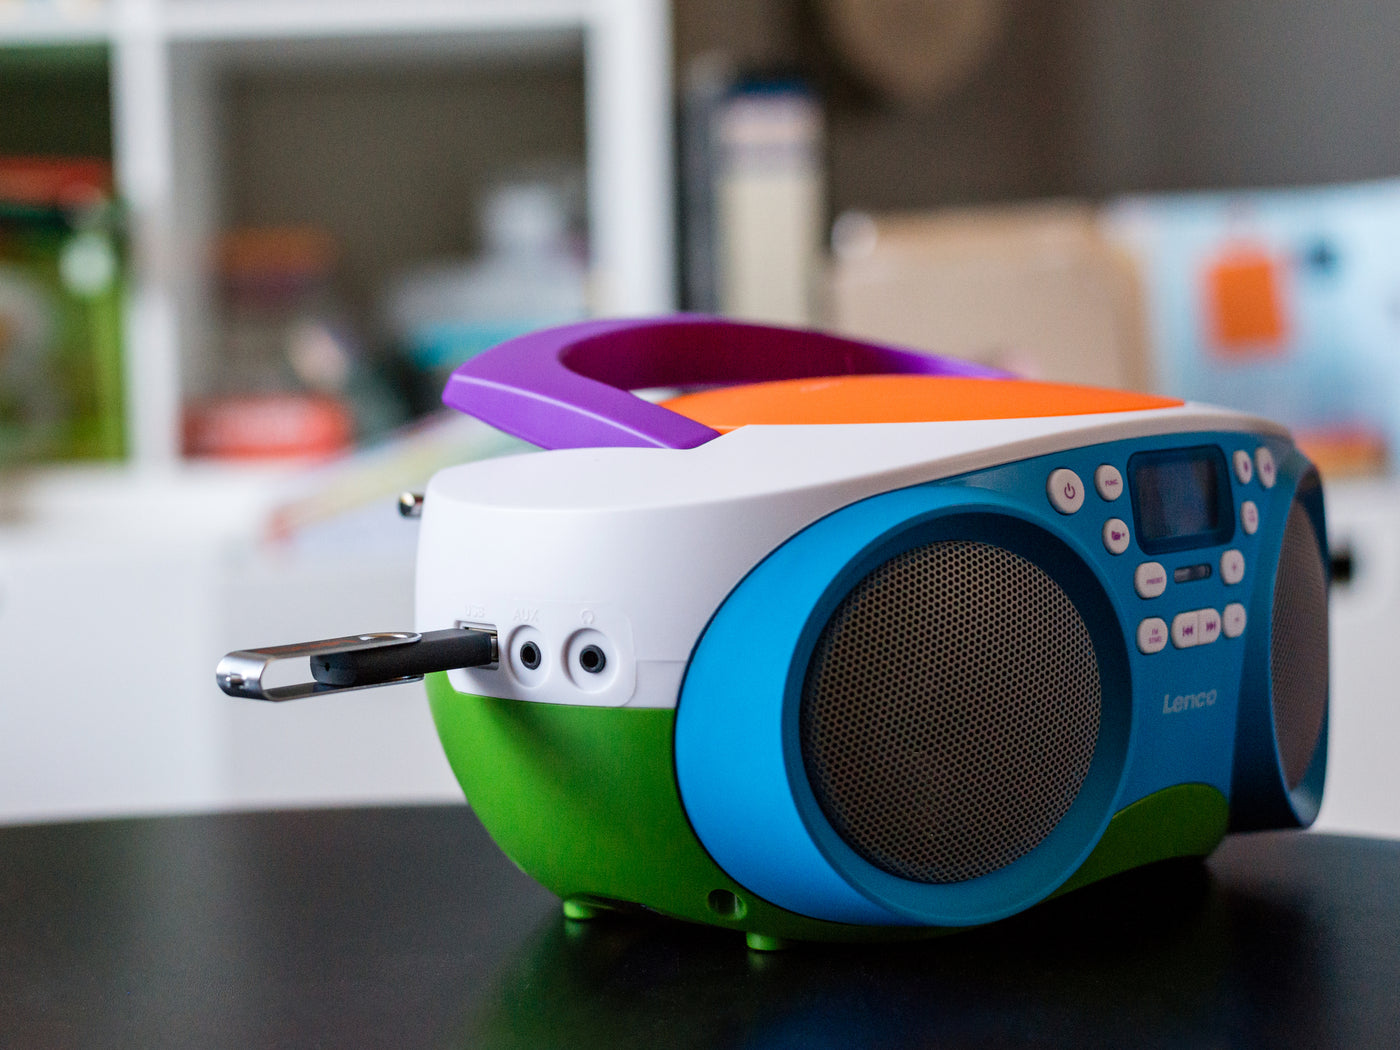 Radio portable lecteur cd et cassette enfants lenco multicolore